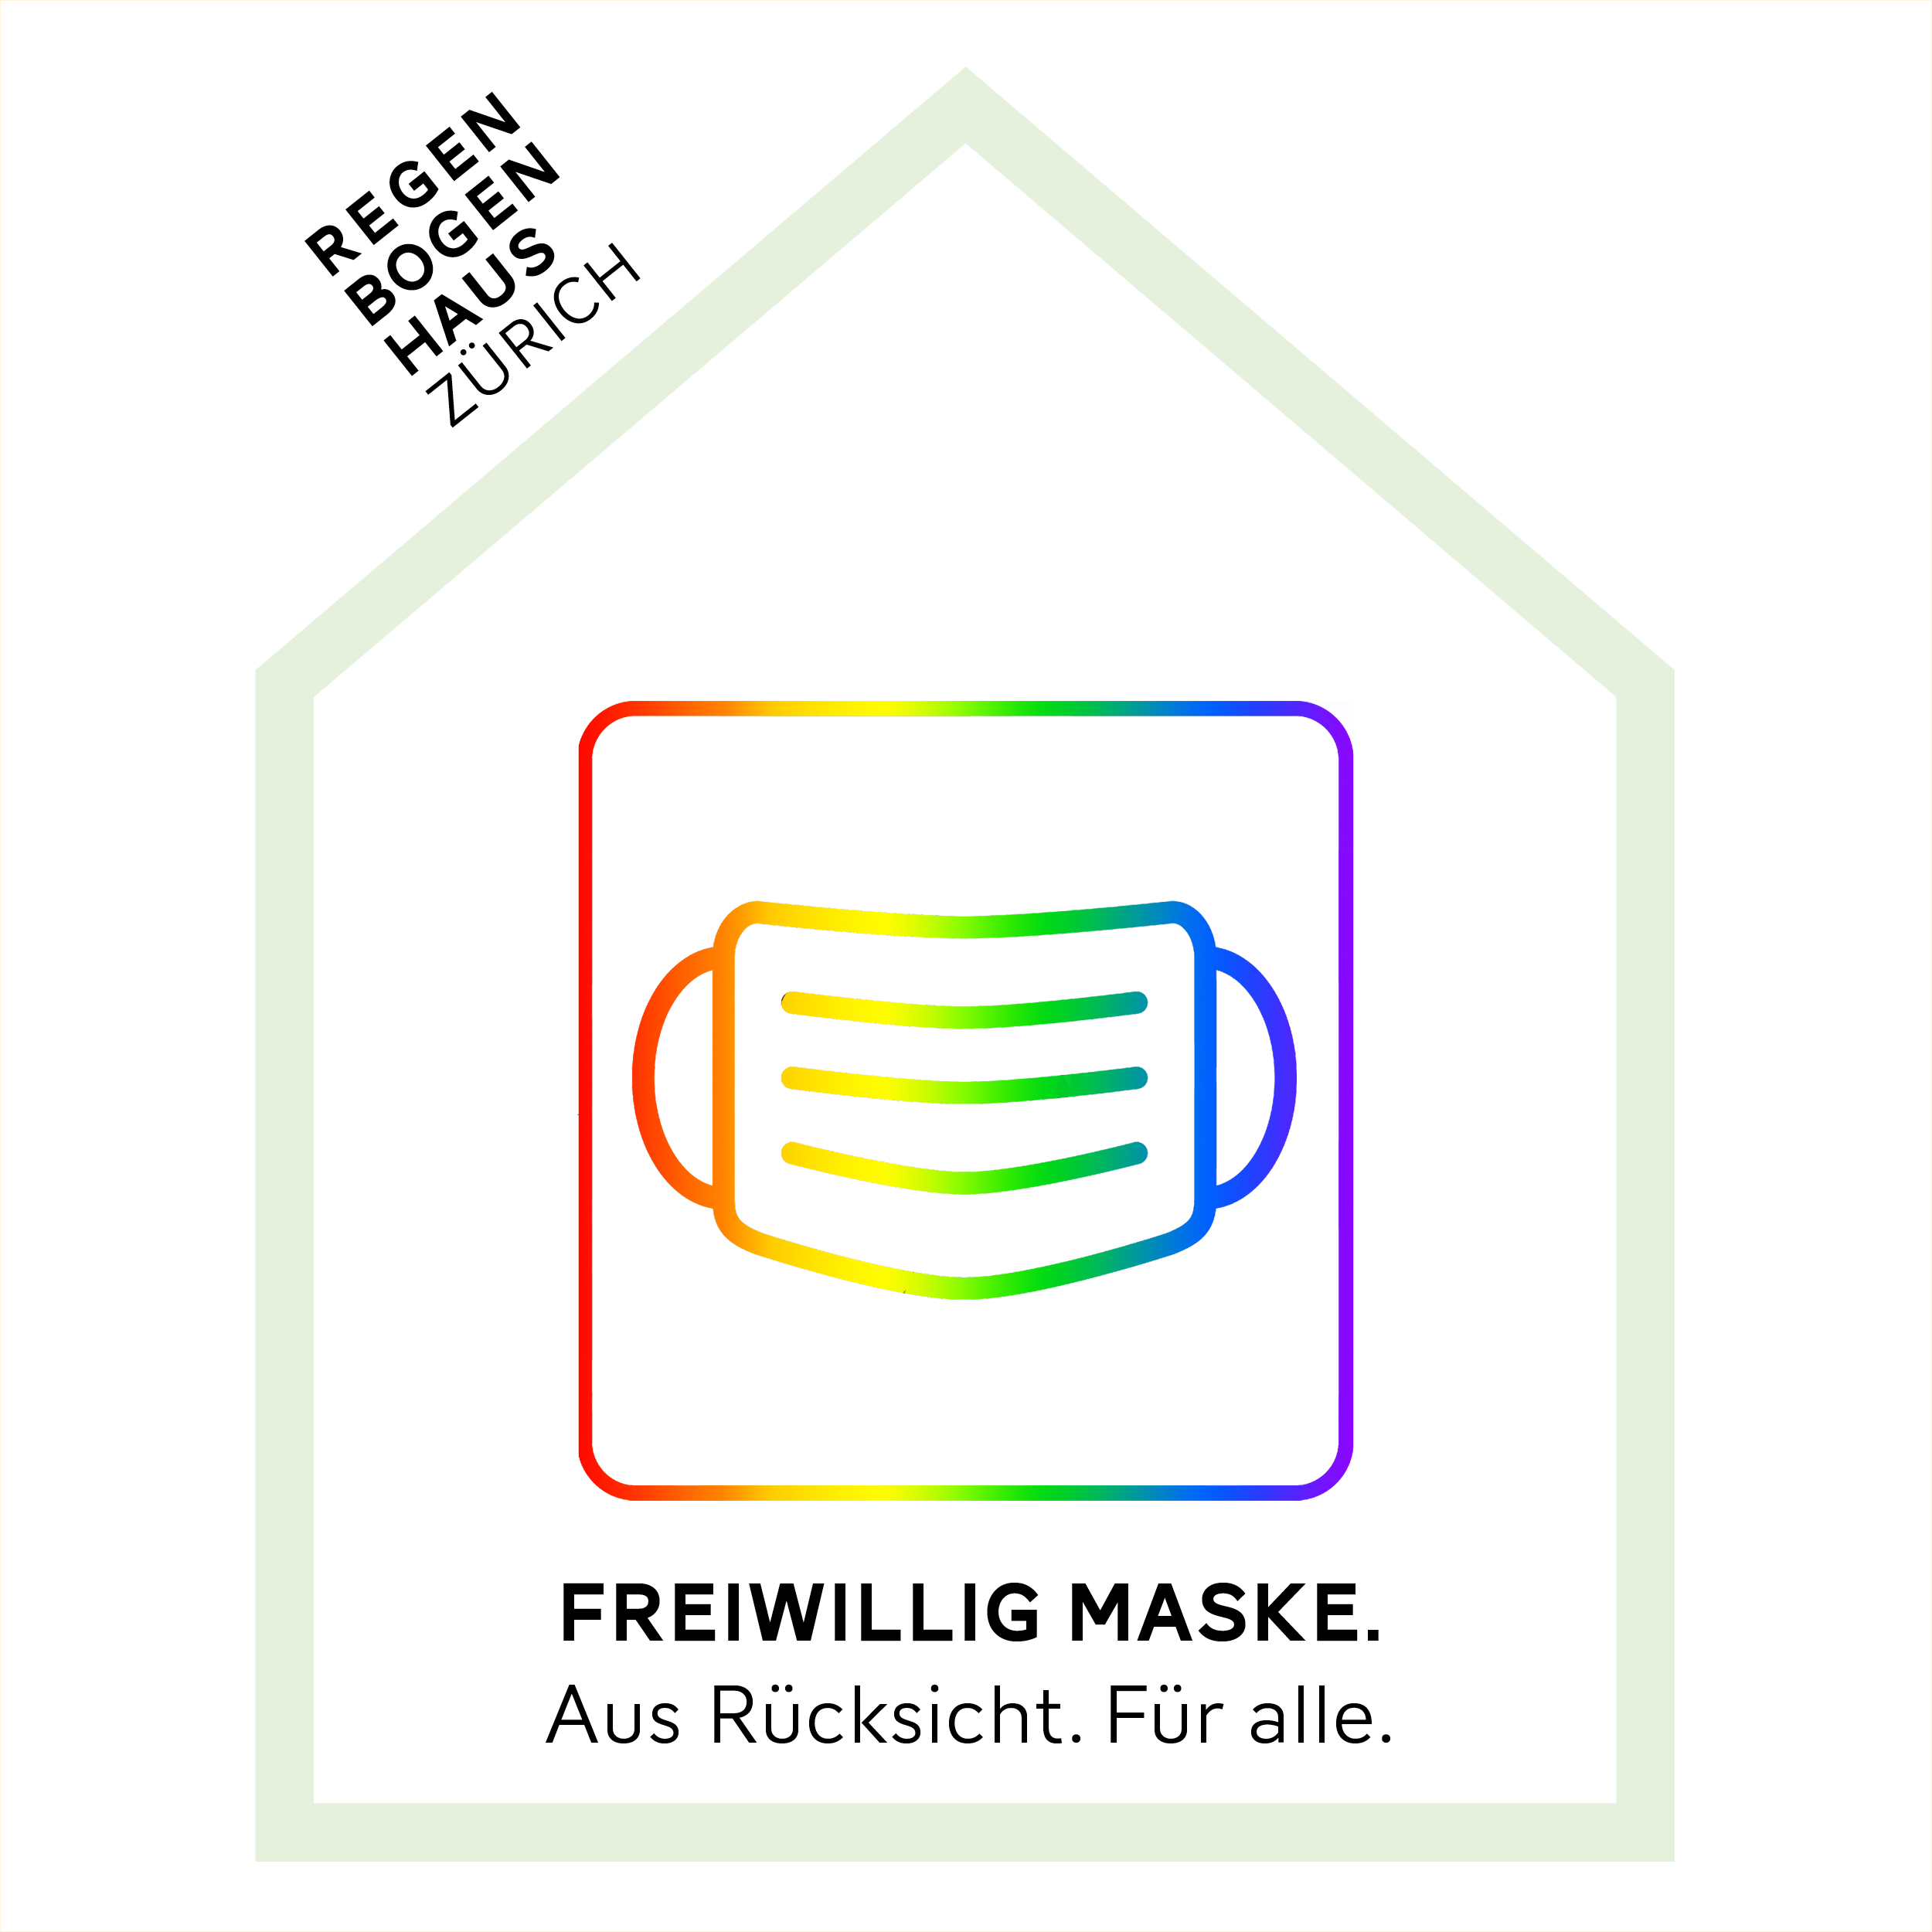 Regenbogen-Masken-Icon im Haus-Logo des Regenbogenhauses. Text: "Freiwillig Maske. Aus Rücksicht. Für alle."